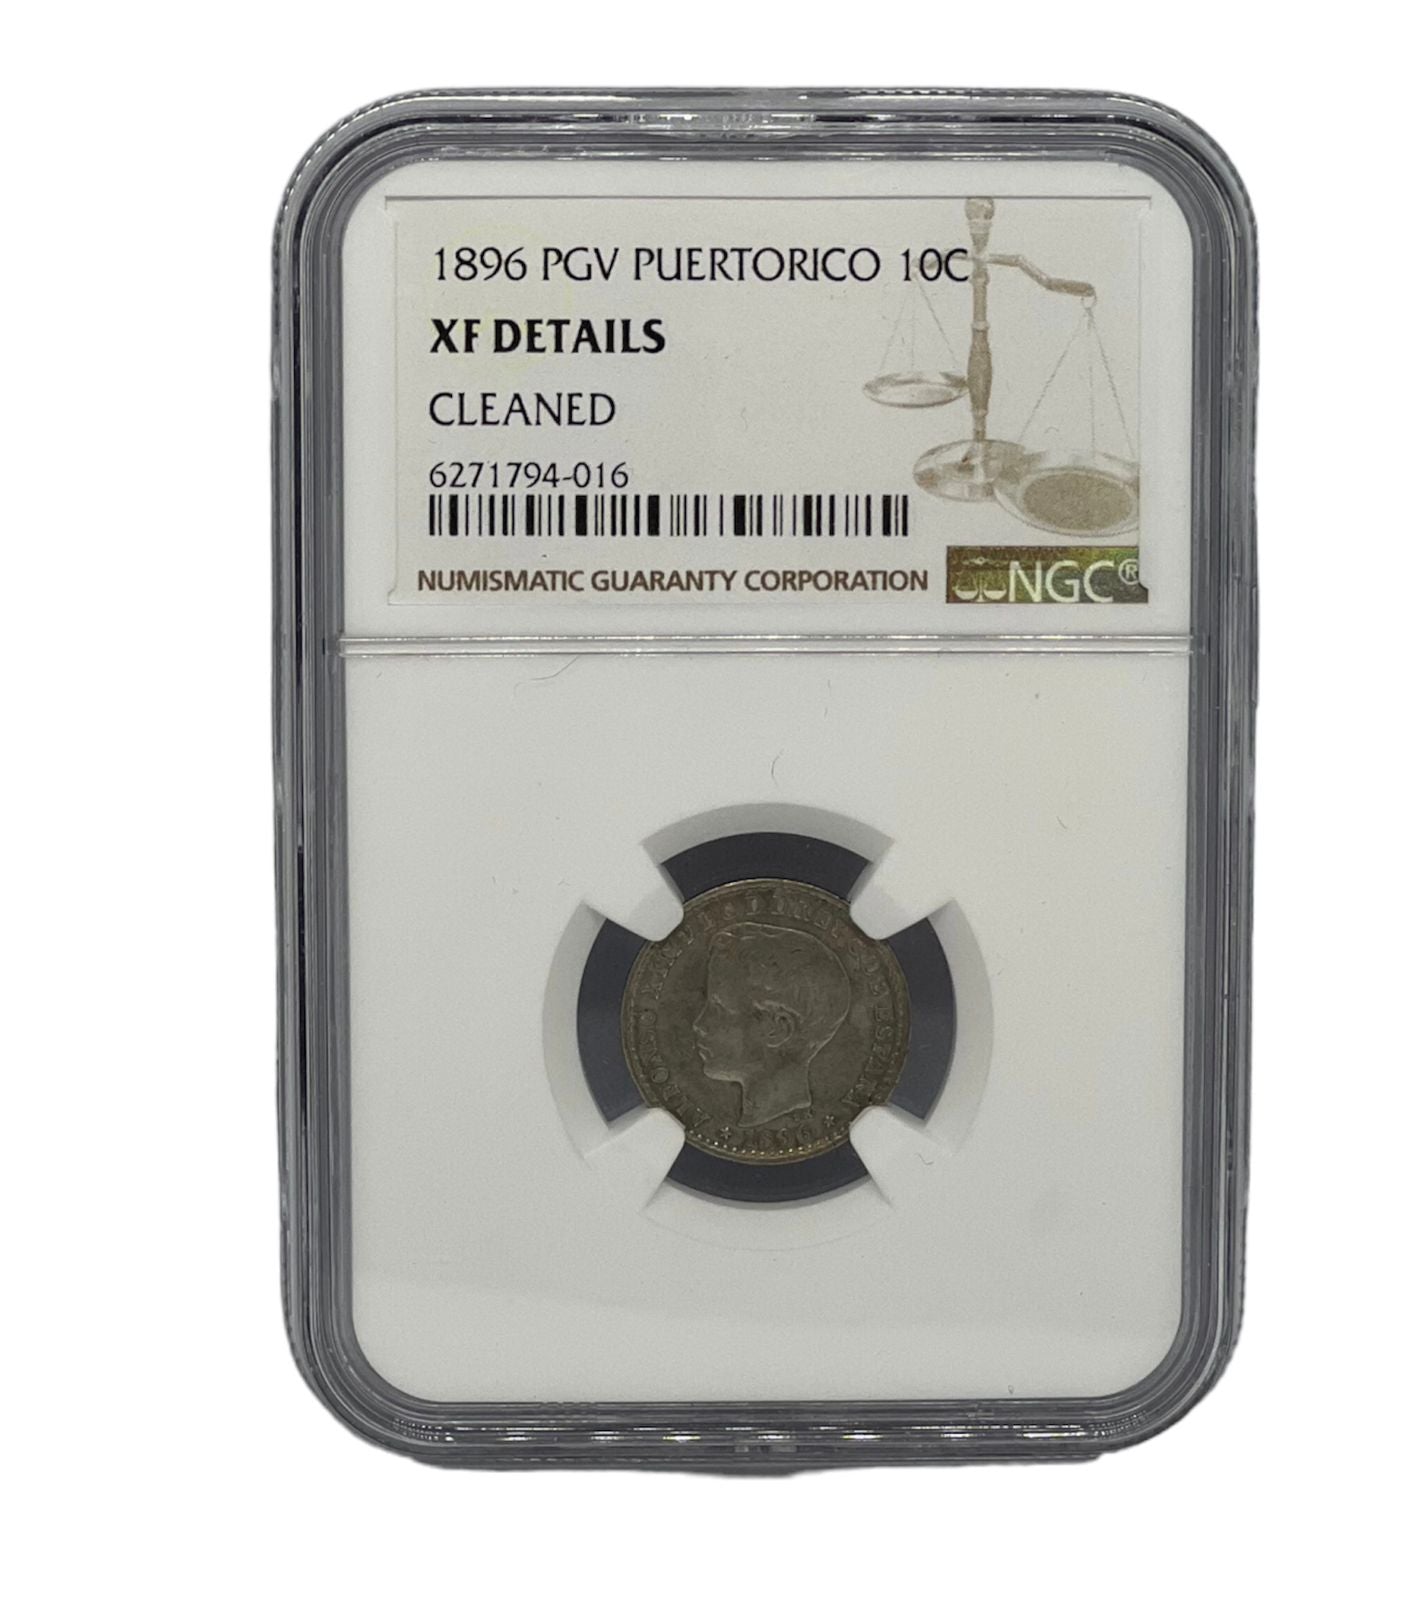 10 Centavos 1896 PGV Puerto Rico NGC